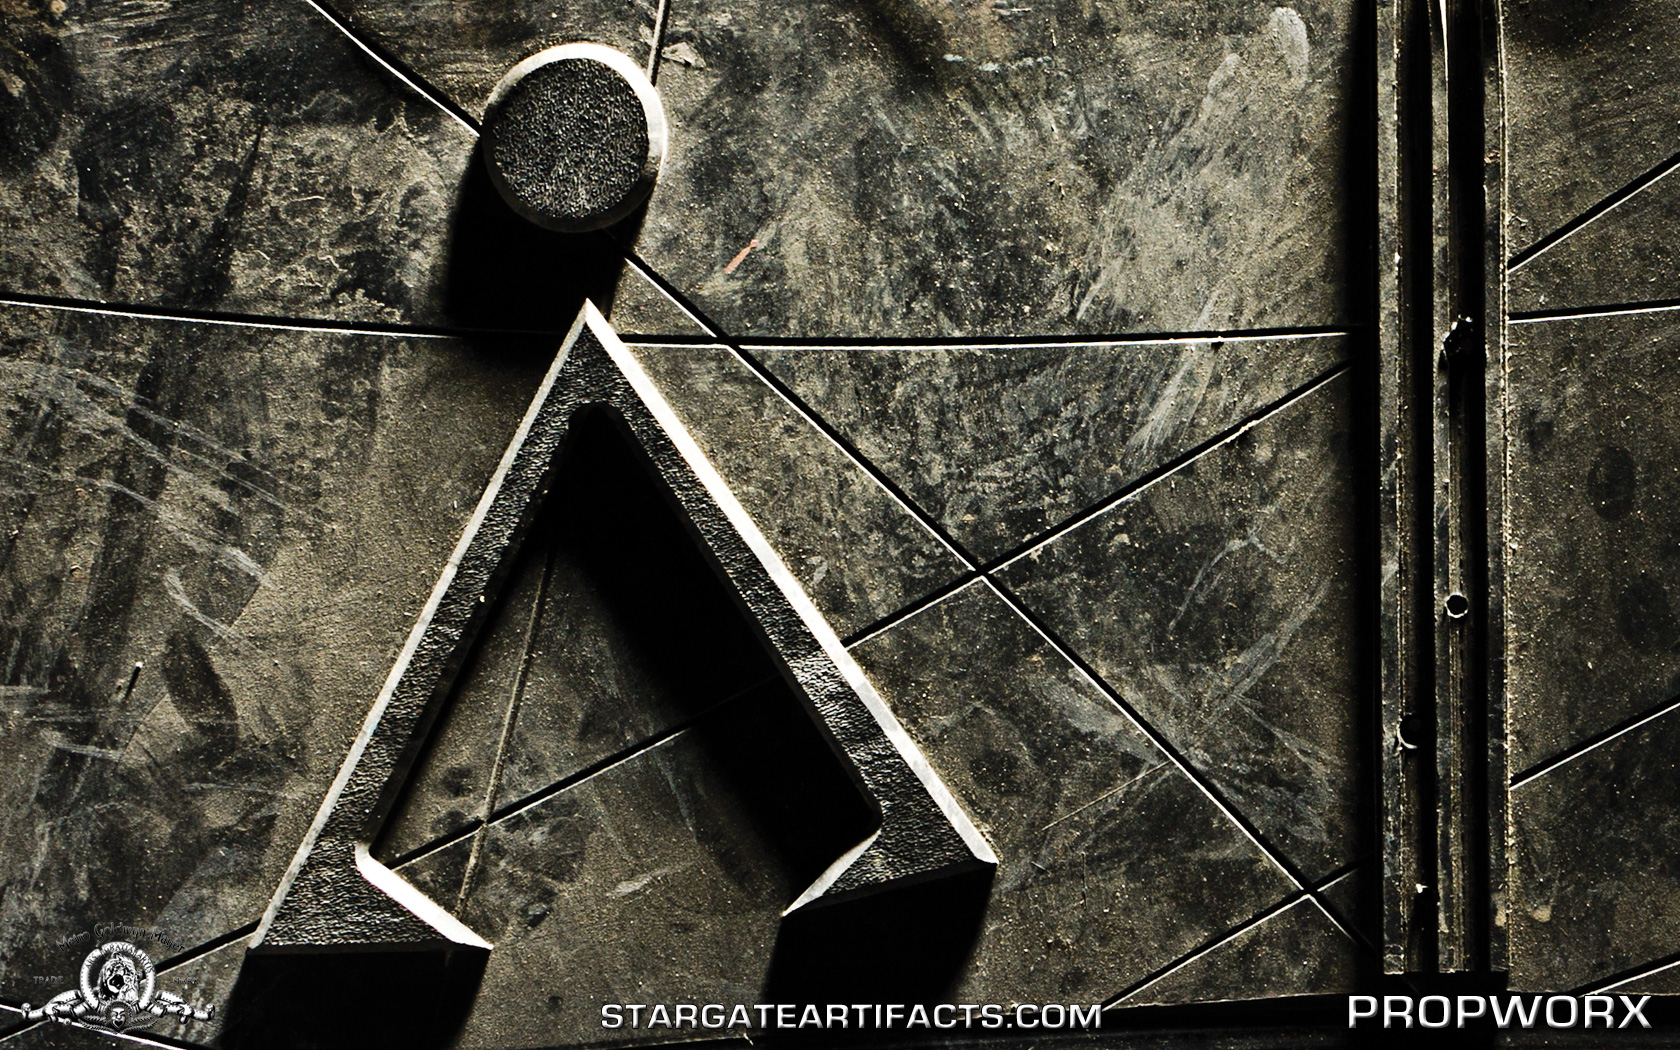 Stargate Wallpaper